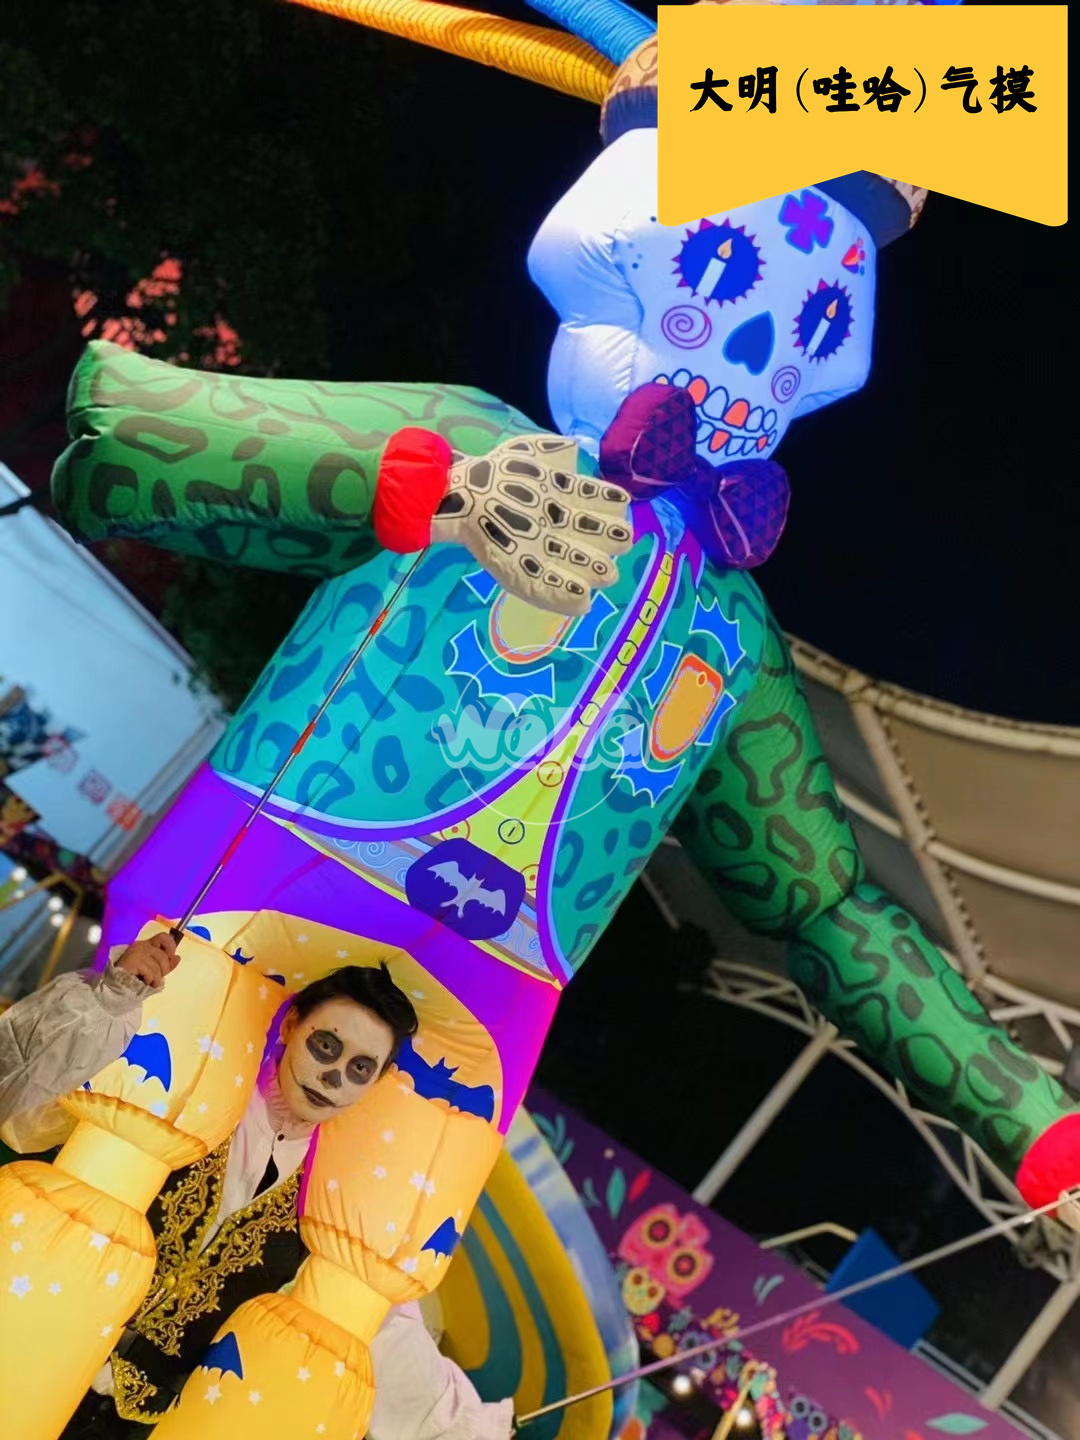 炸街的万圣节活动中少不了的商演以及互动演出气模道具人背木偶